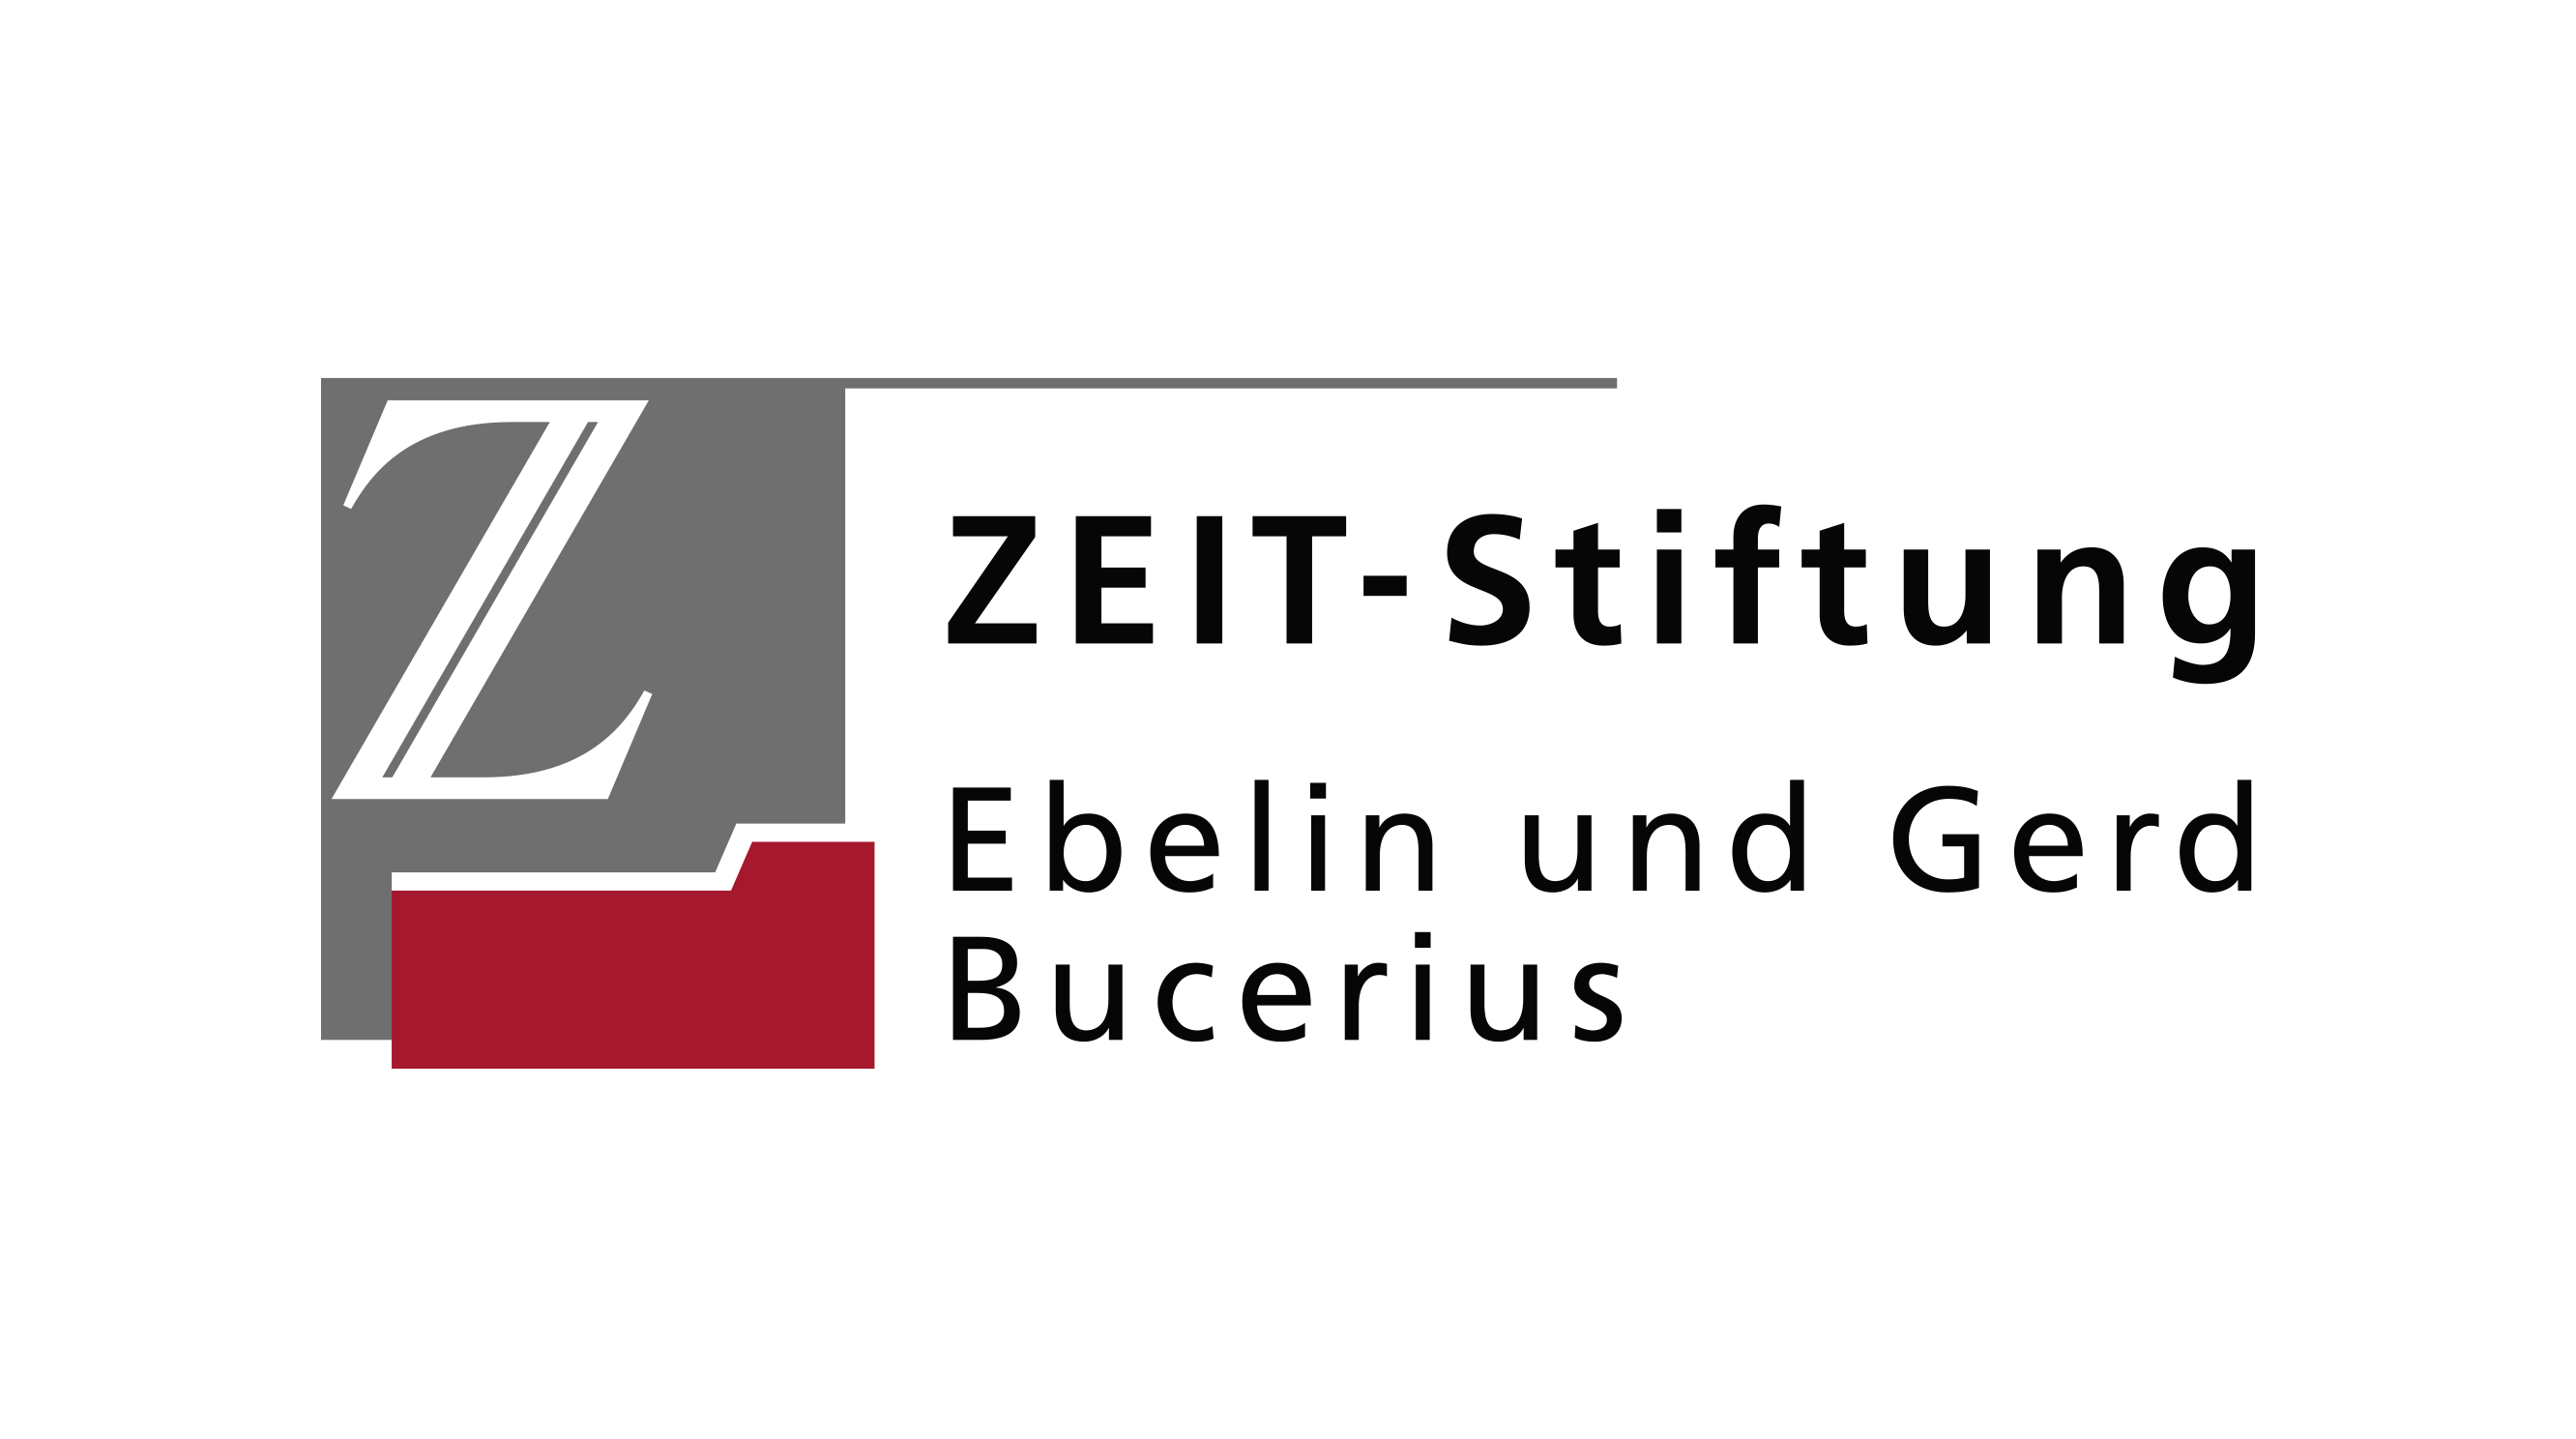 ZEIT logo